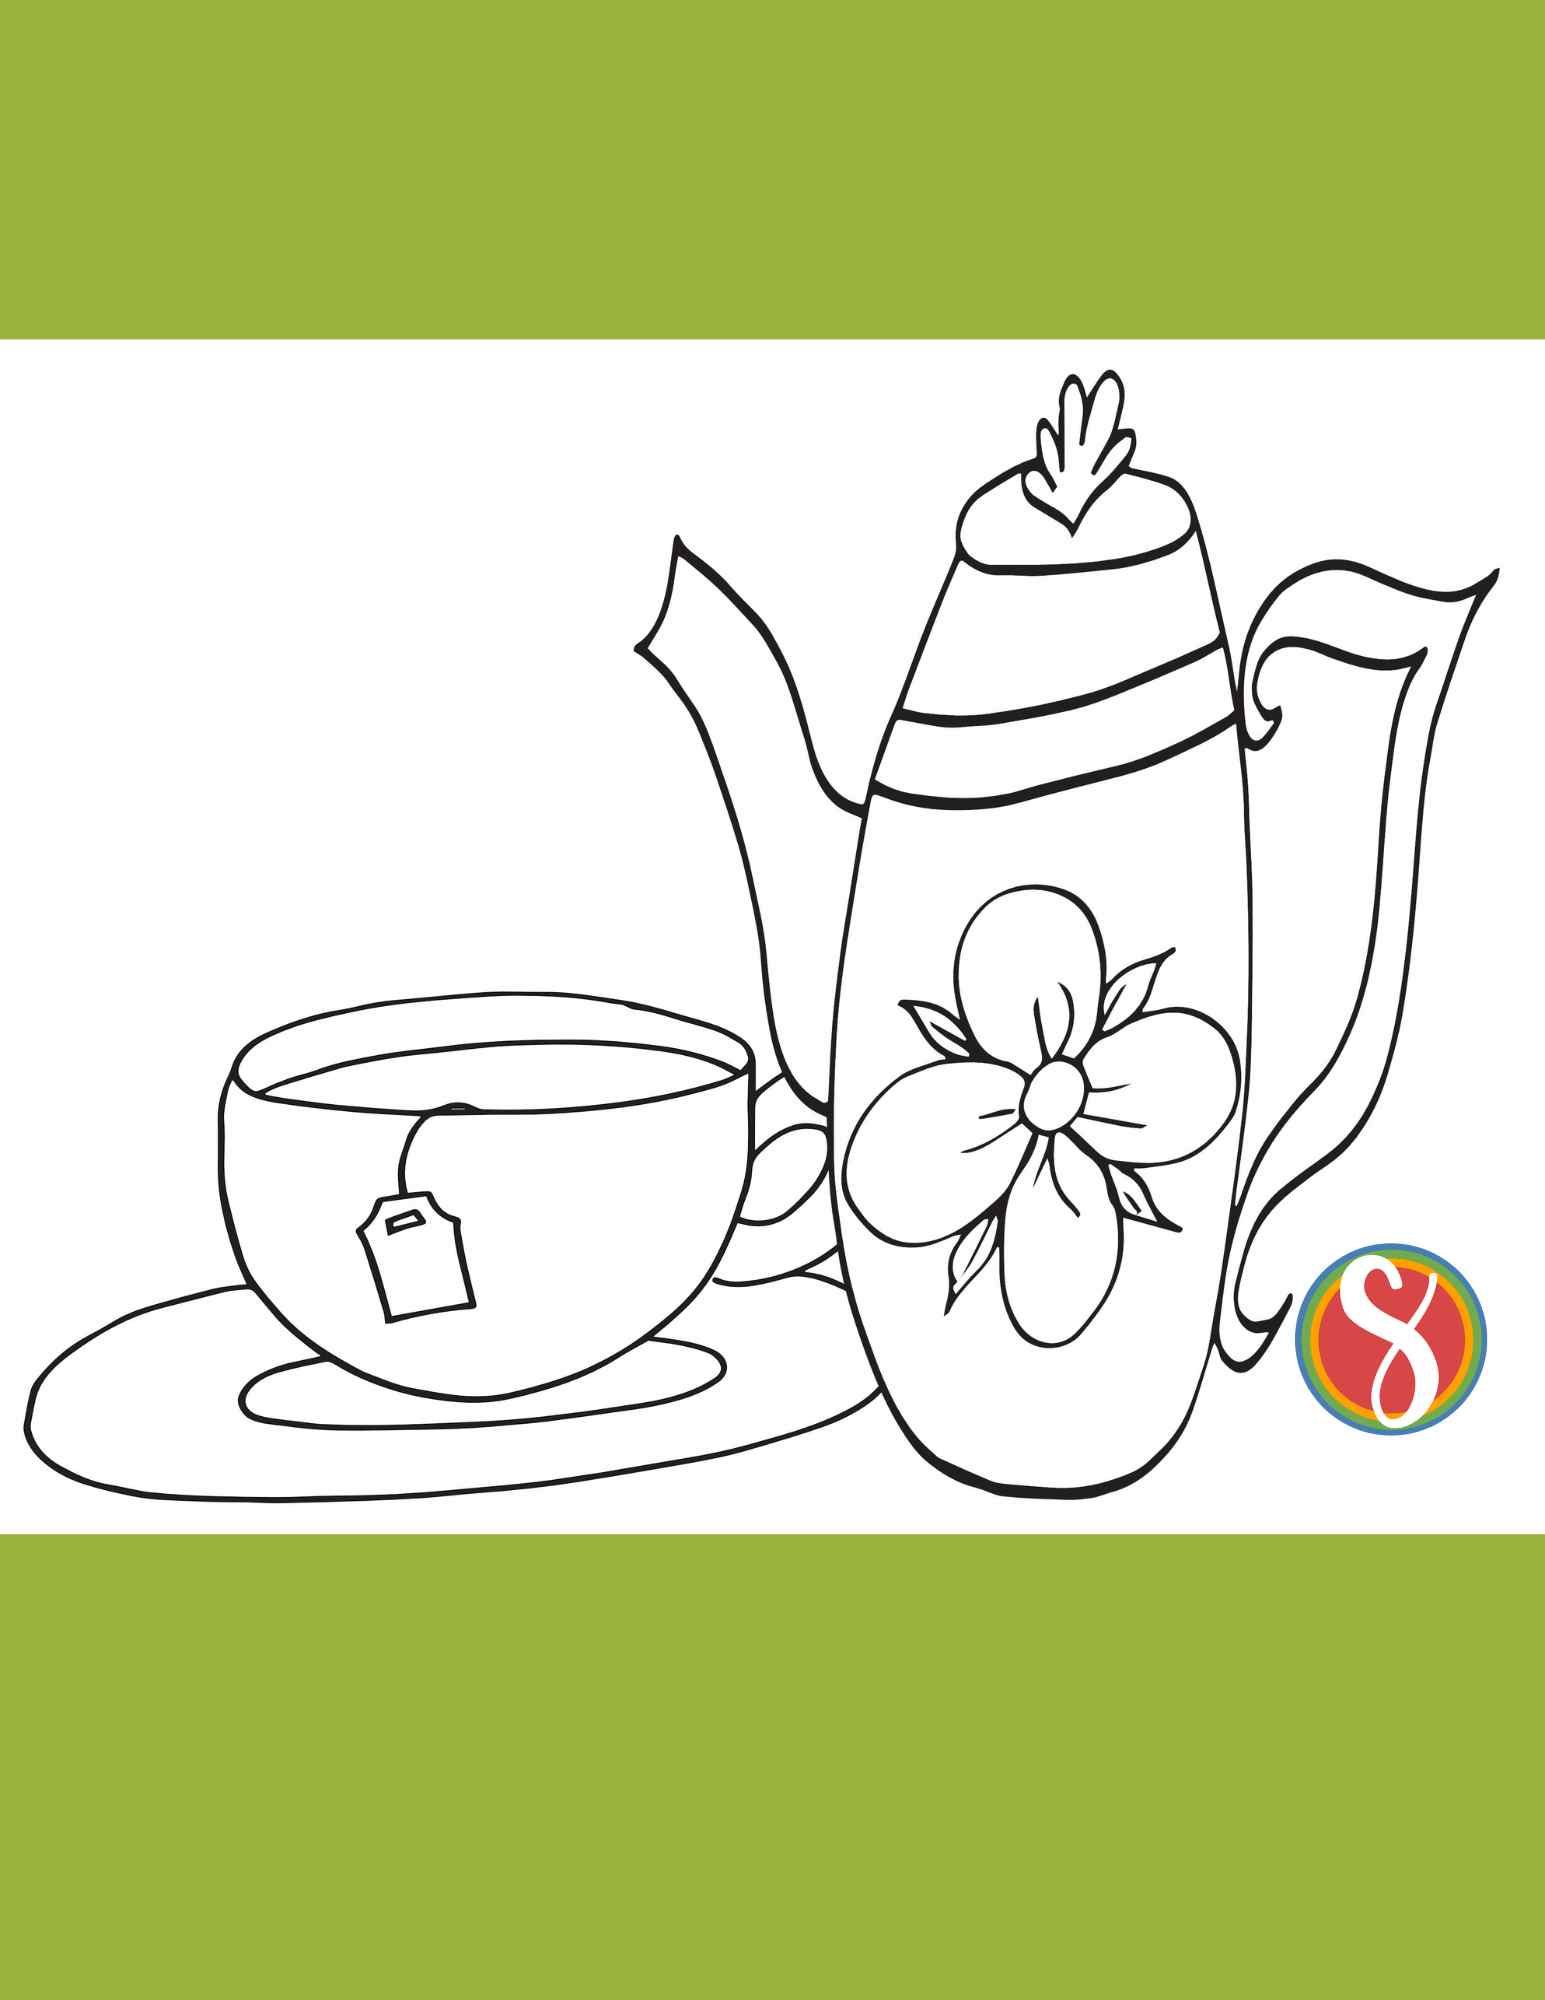 Free teapot coloring pages â stevie doodles